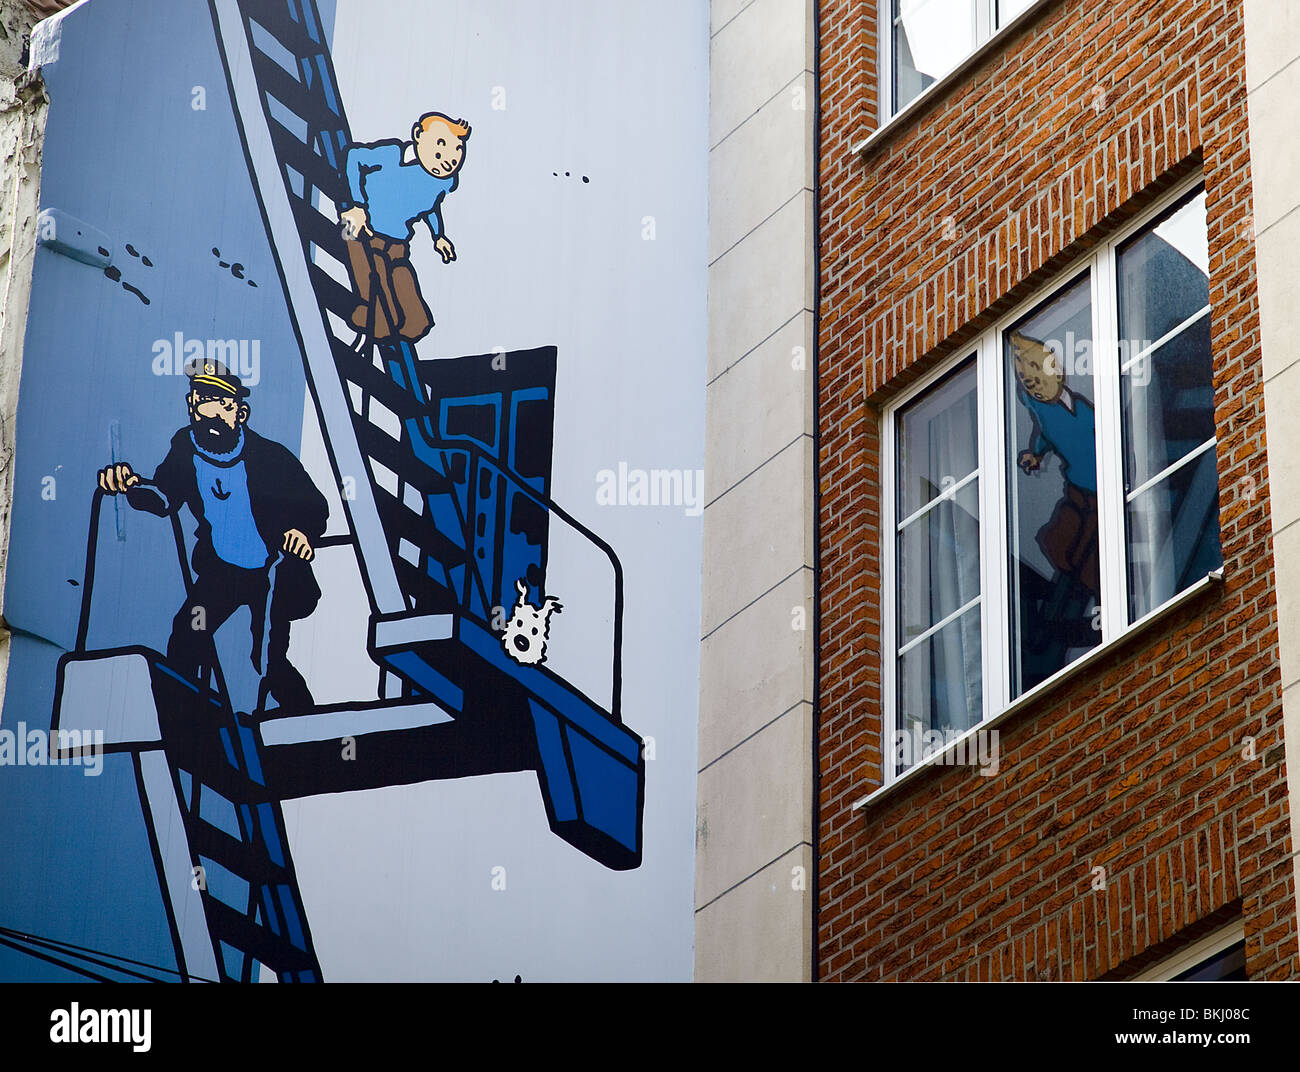 Tim und Struppi in Malerei Wand. Brüssel. Belgien Stockfoto